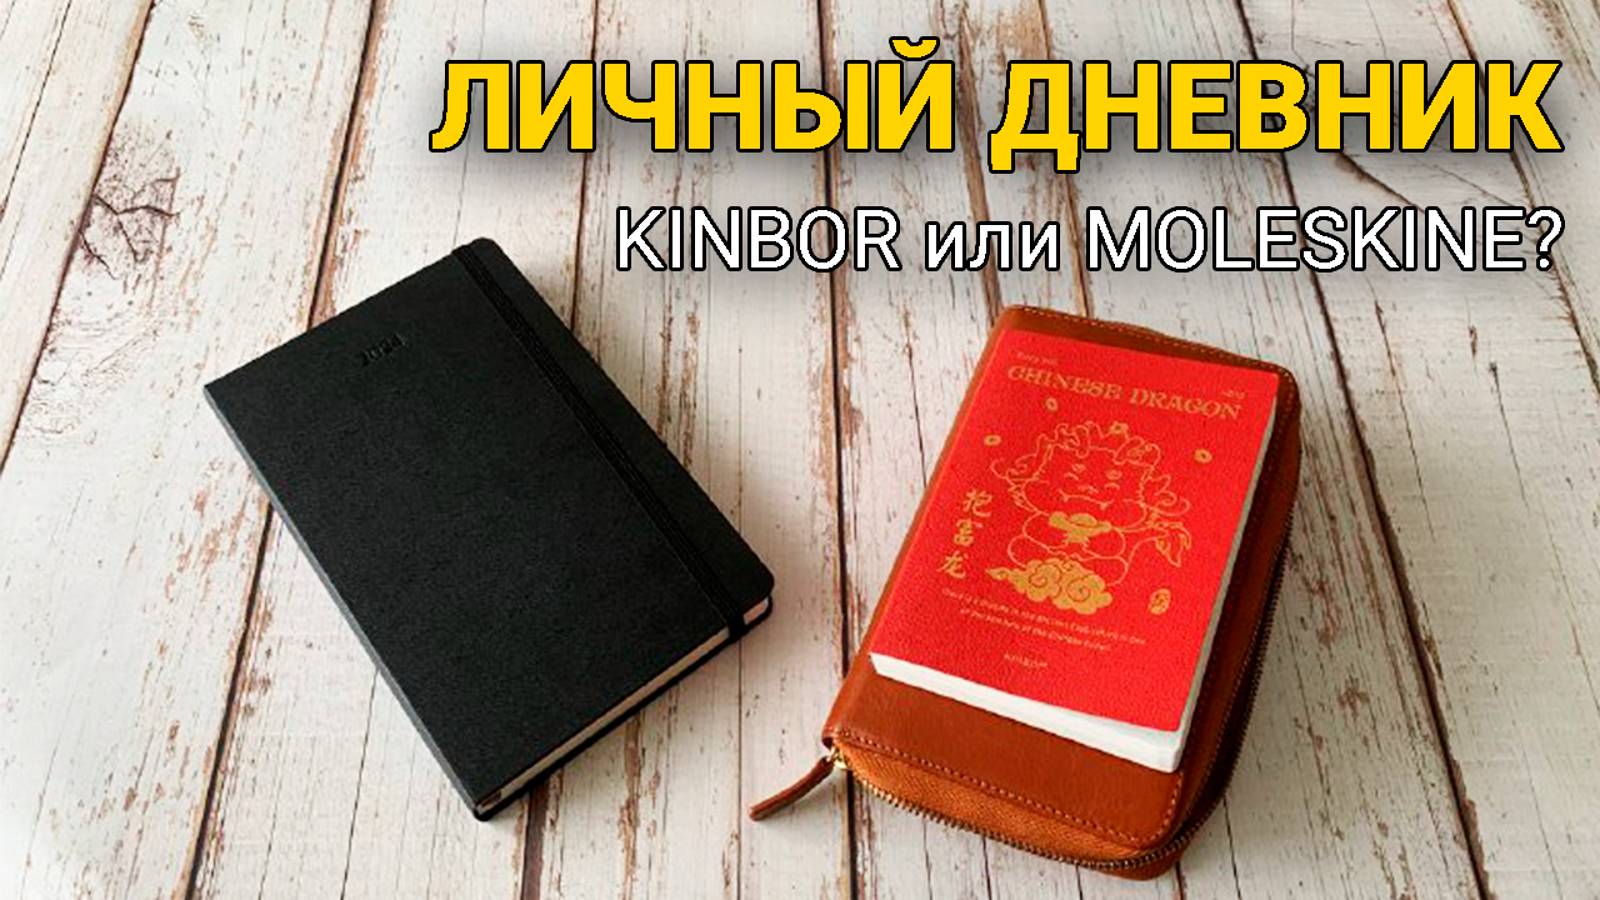 Личный ДНЕВНИК/Что выбрала Kinbor или Moleskine?!